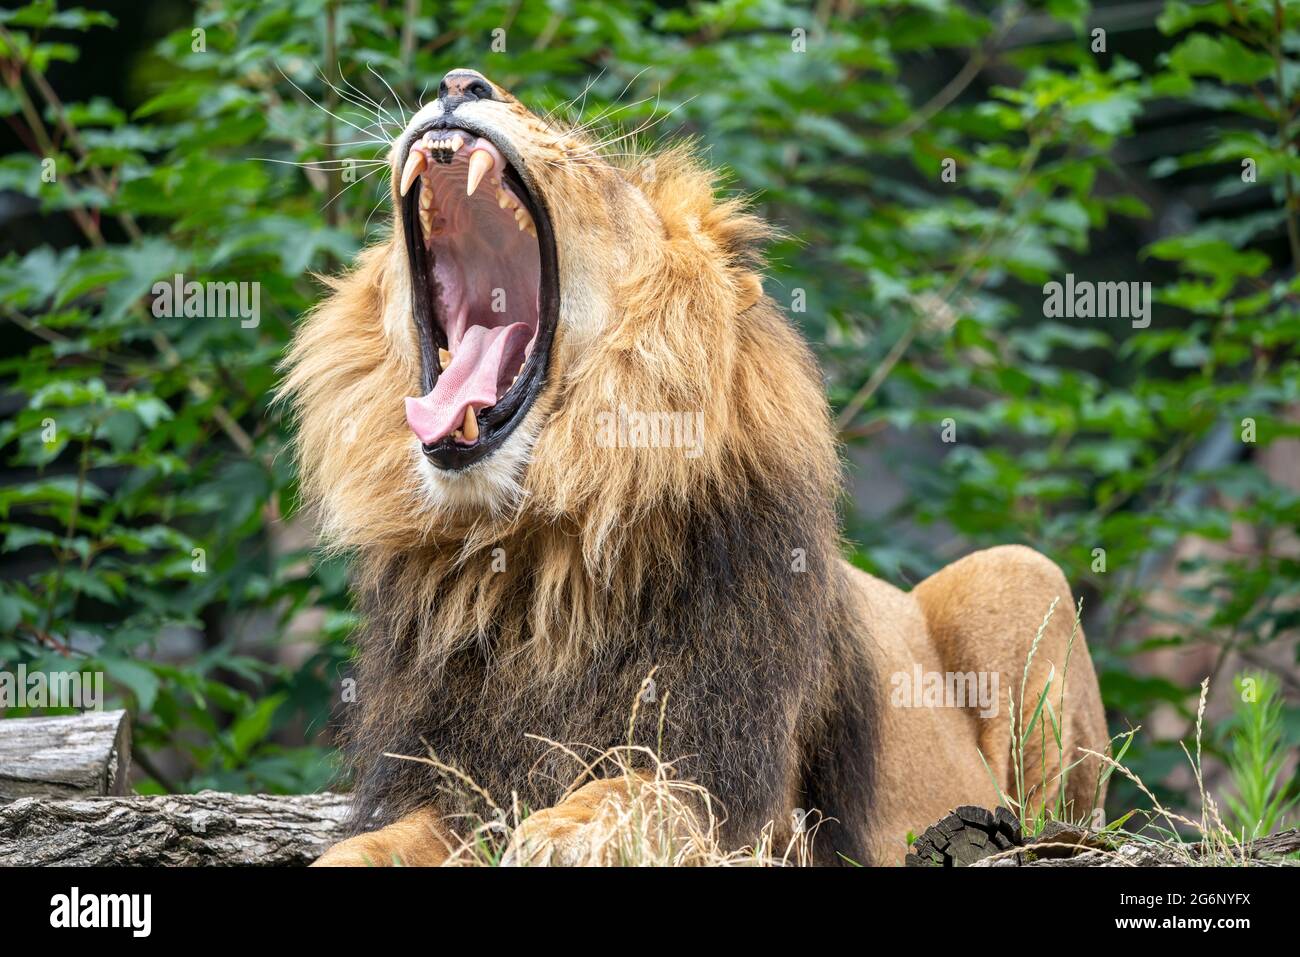 Zoo de Duisburg, lion masculin, Panthera leo, NRW, Allemagne Banque D'Images